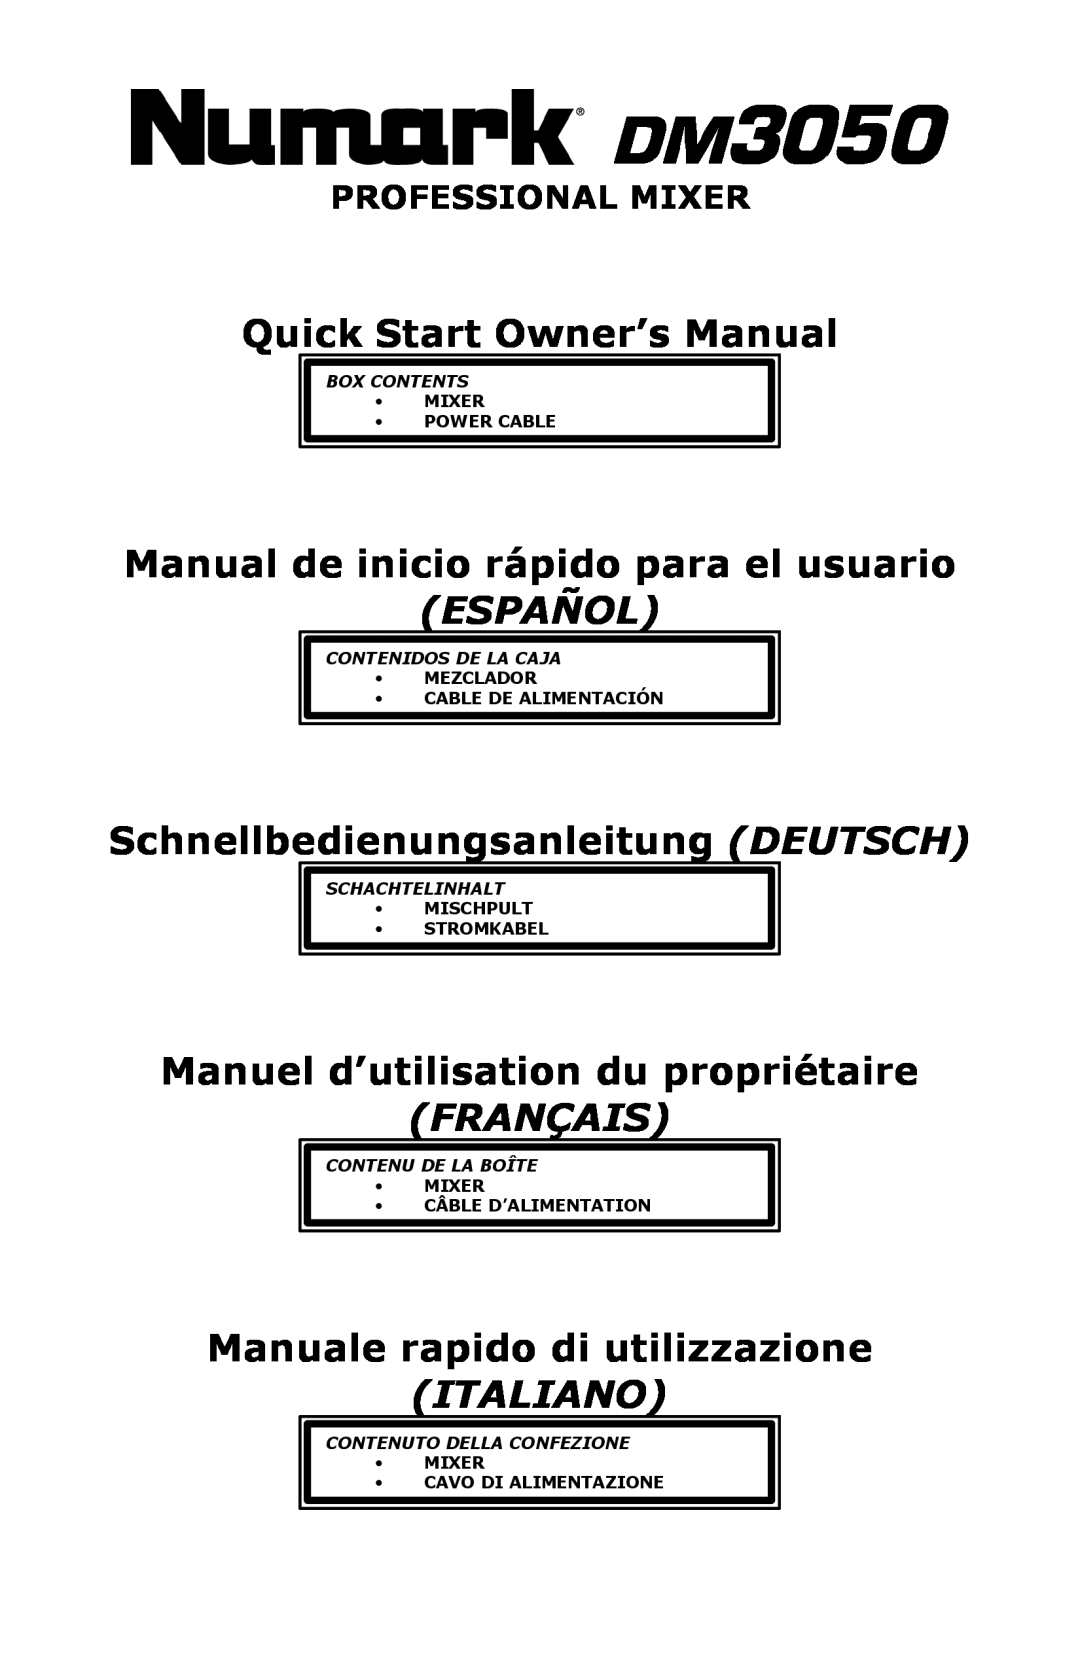 Numark Industries DM3050 manual Manual de inicio rápido para el usuario, Español, Schnellbedienungsanleitung DEUTSCH 